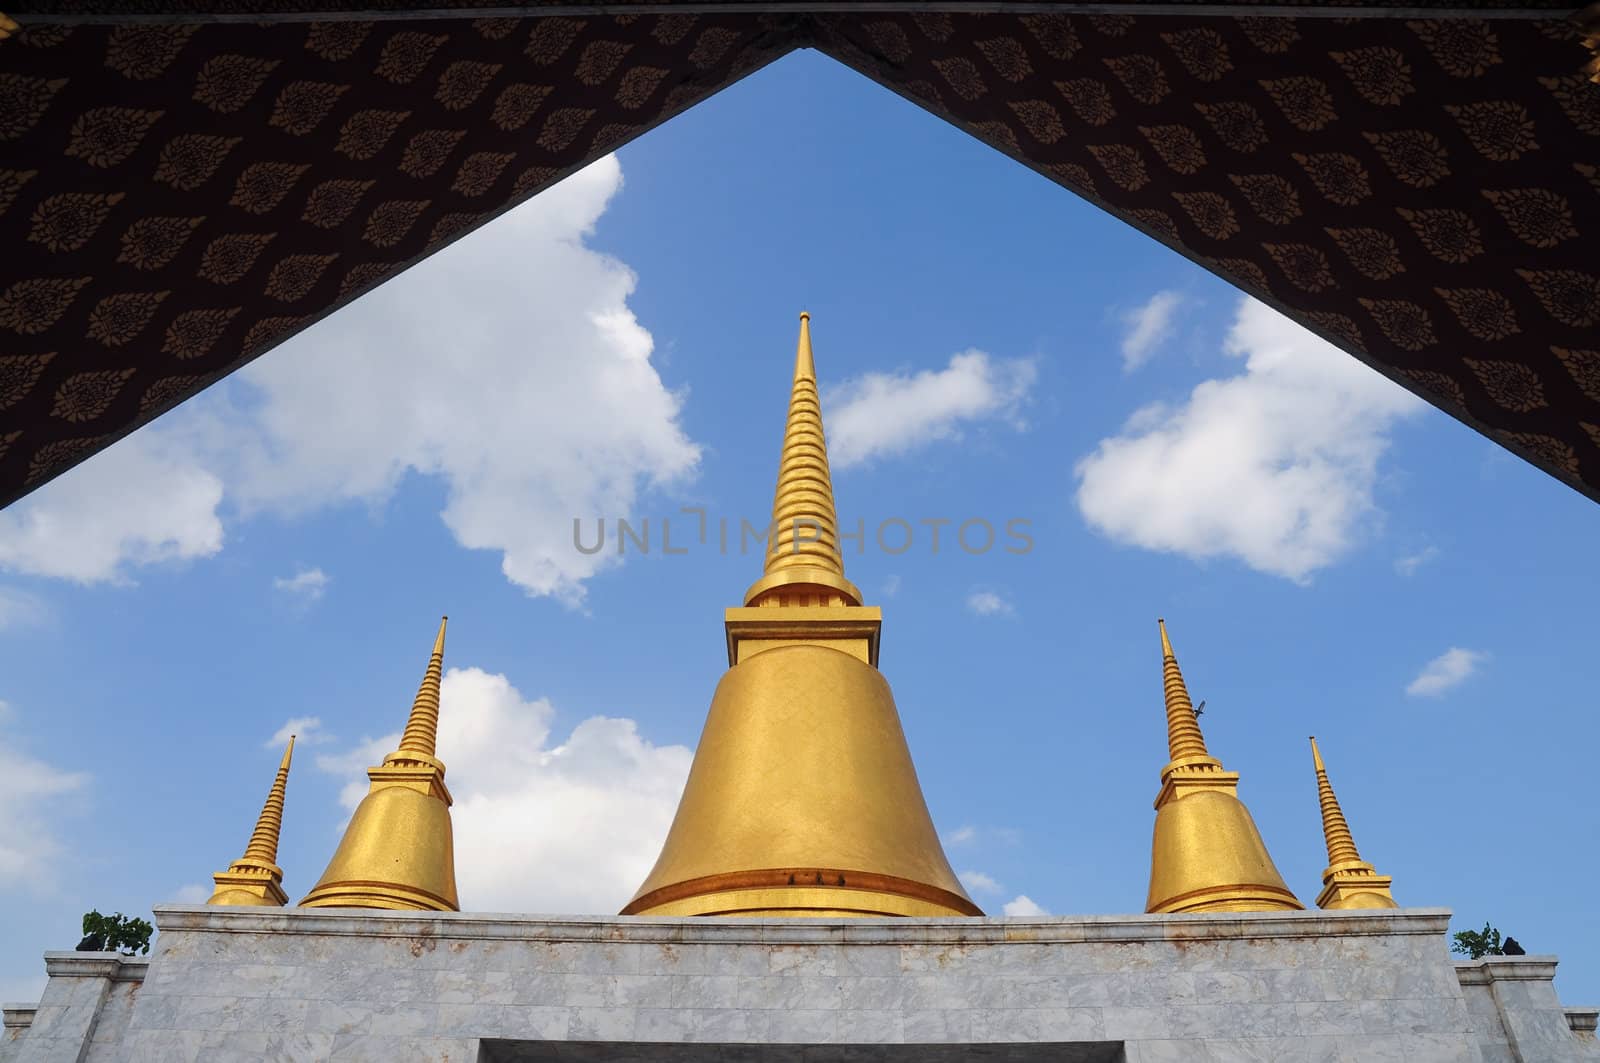 Golden stupa in blue sky